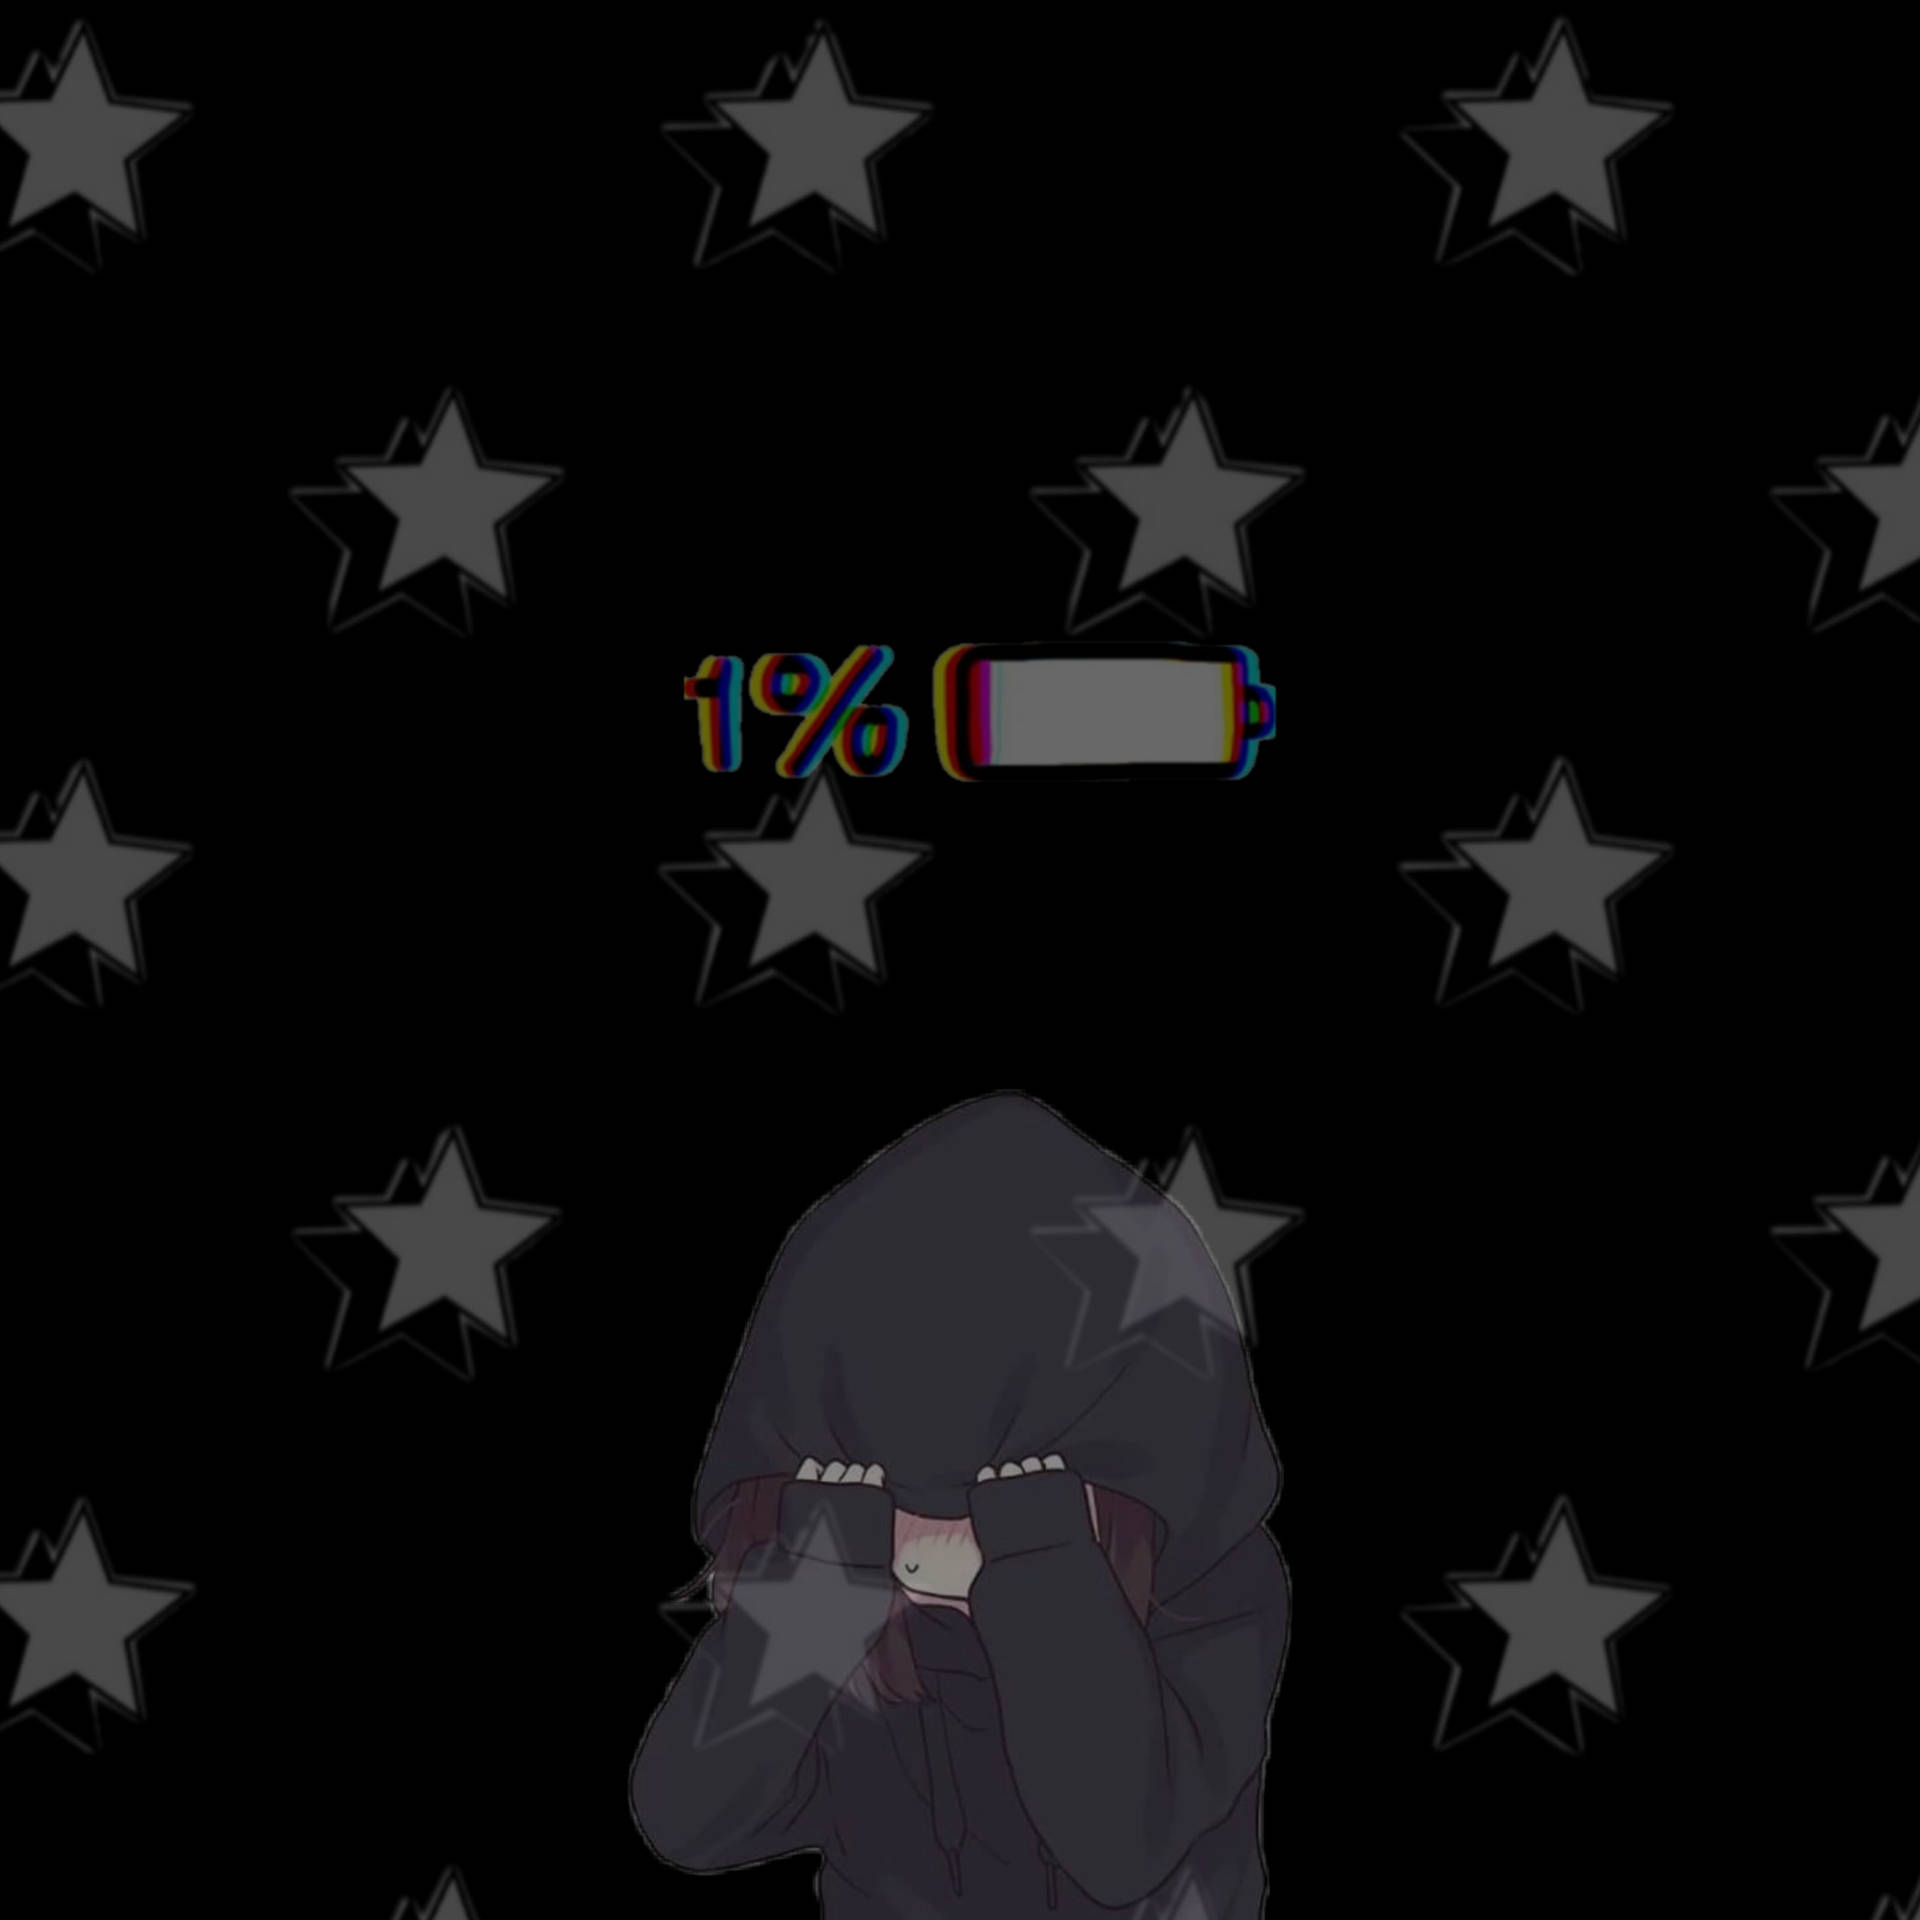 Sad Aesthetic Anime Girl Low Battery Wallpaper